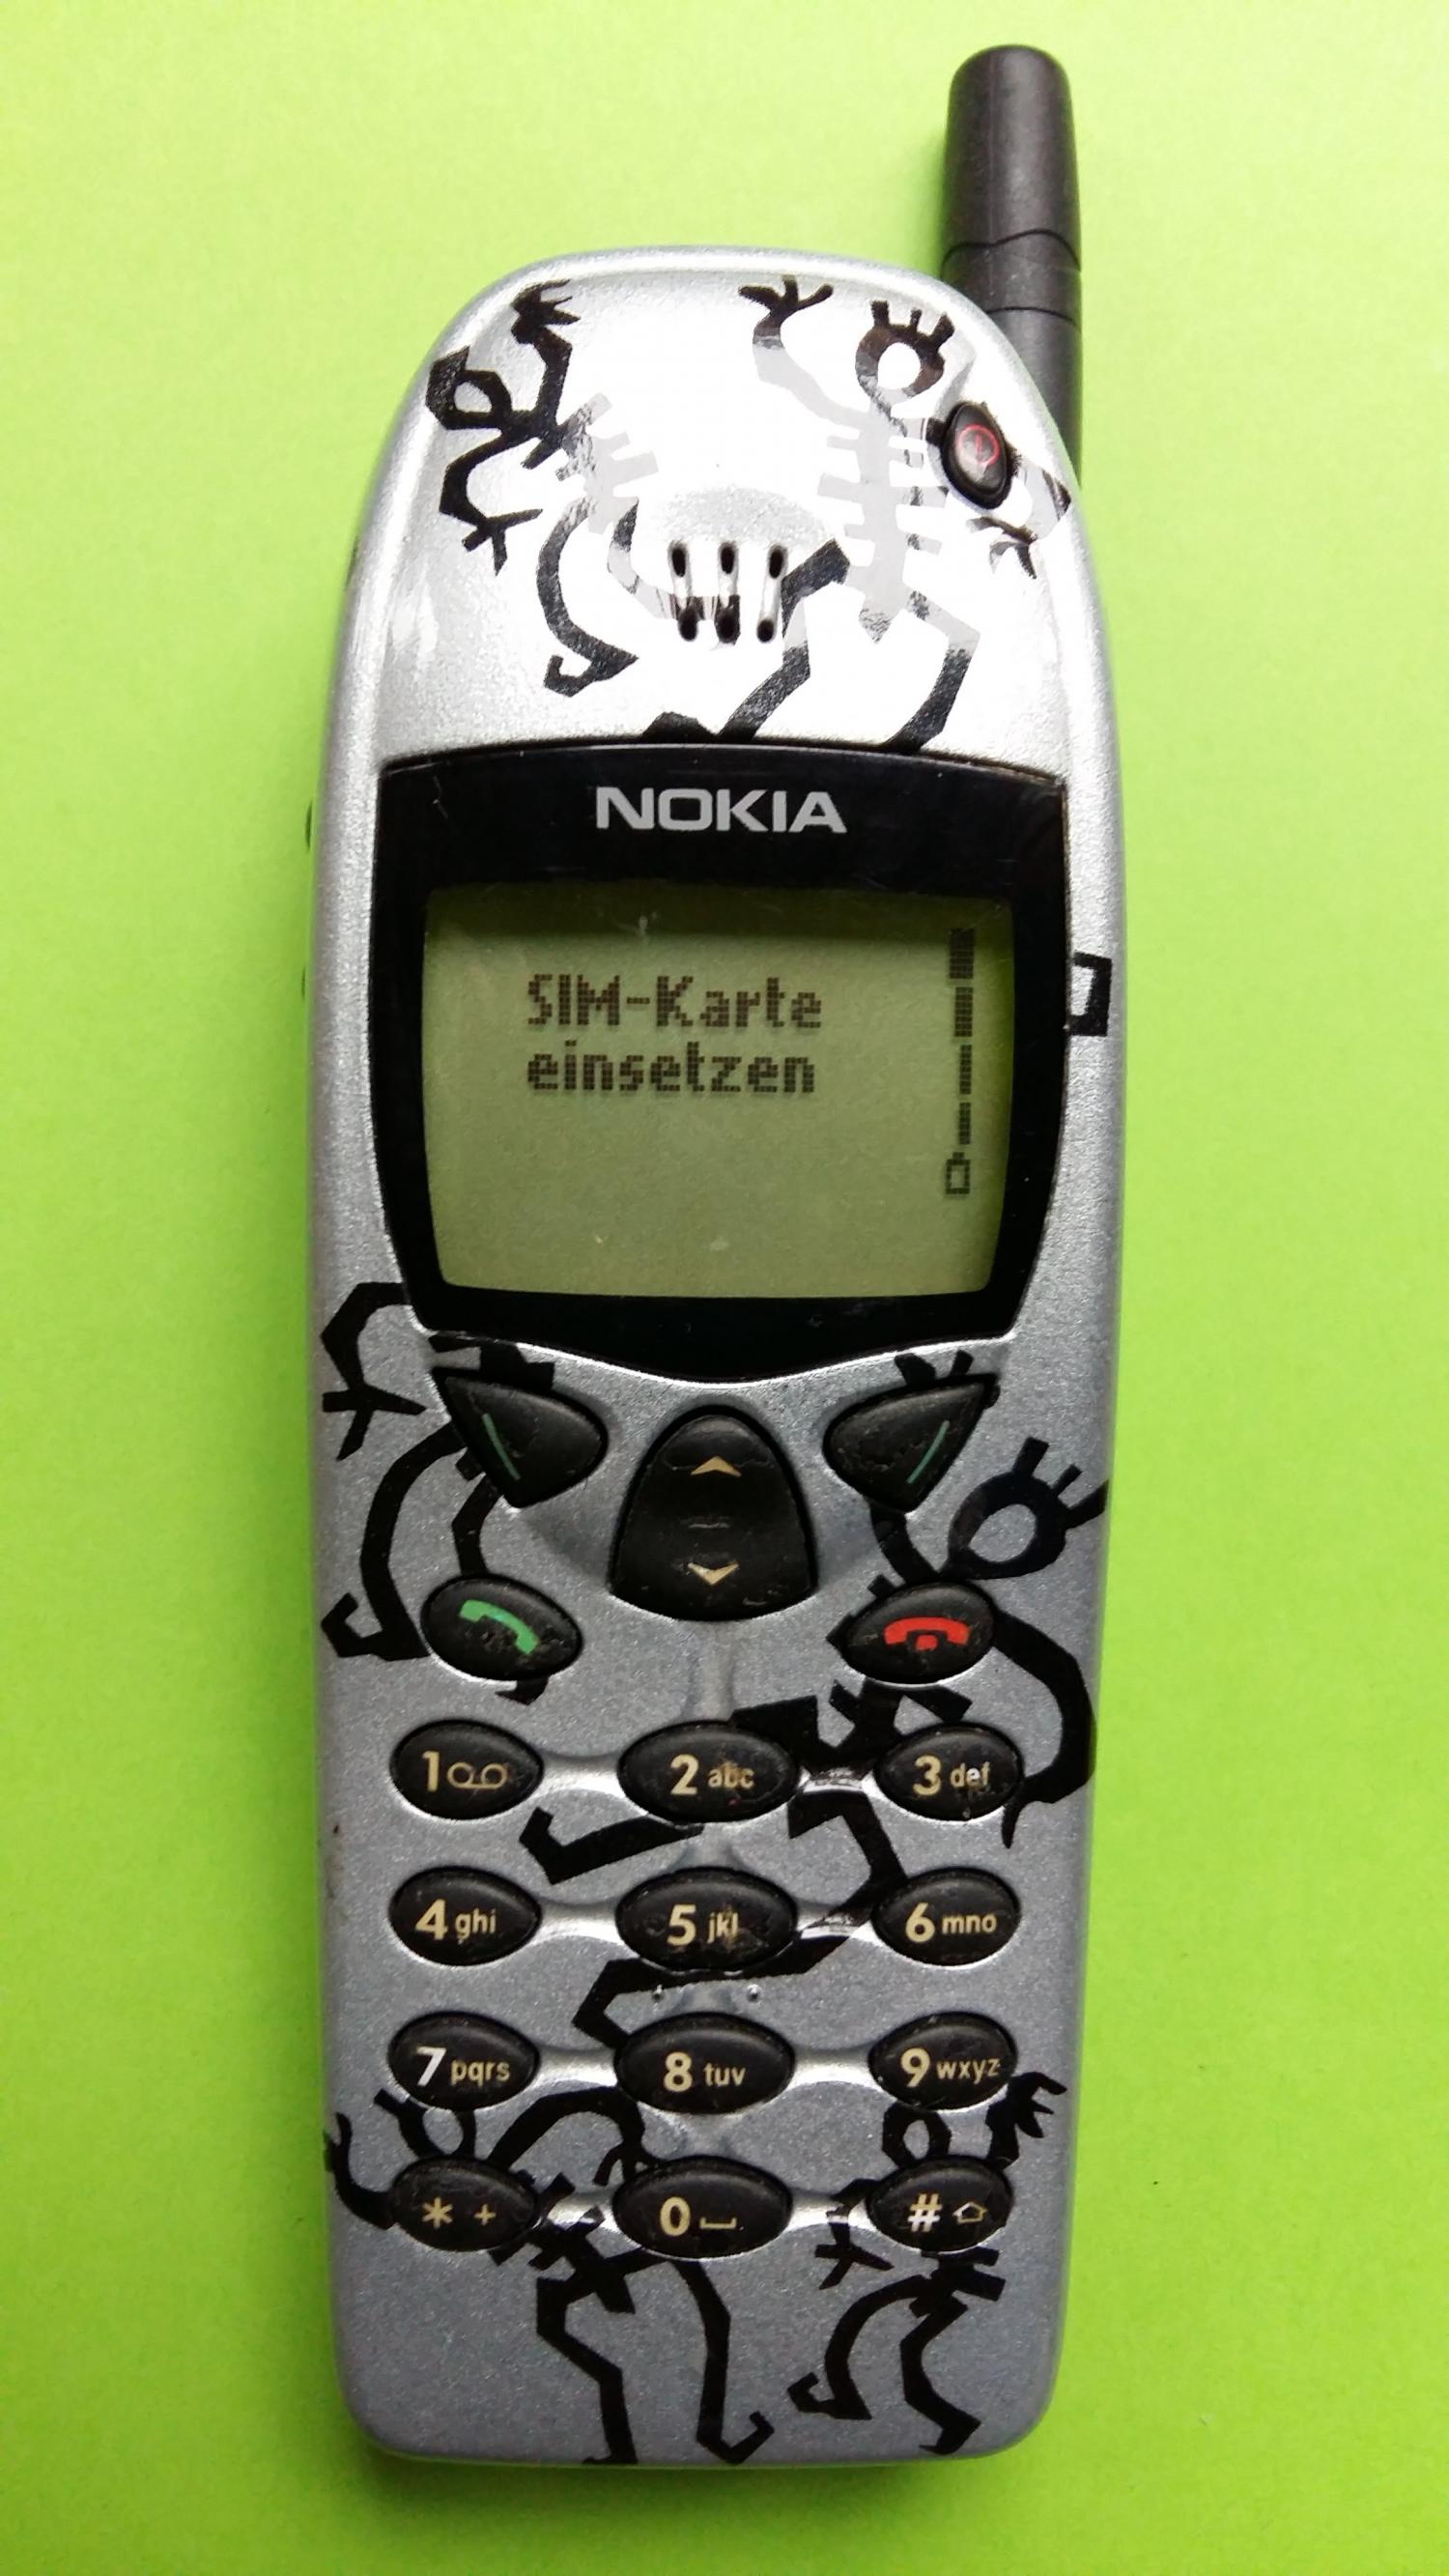 image-7304992-Nokia 6110 (8)1.jpg